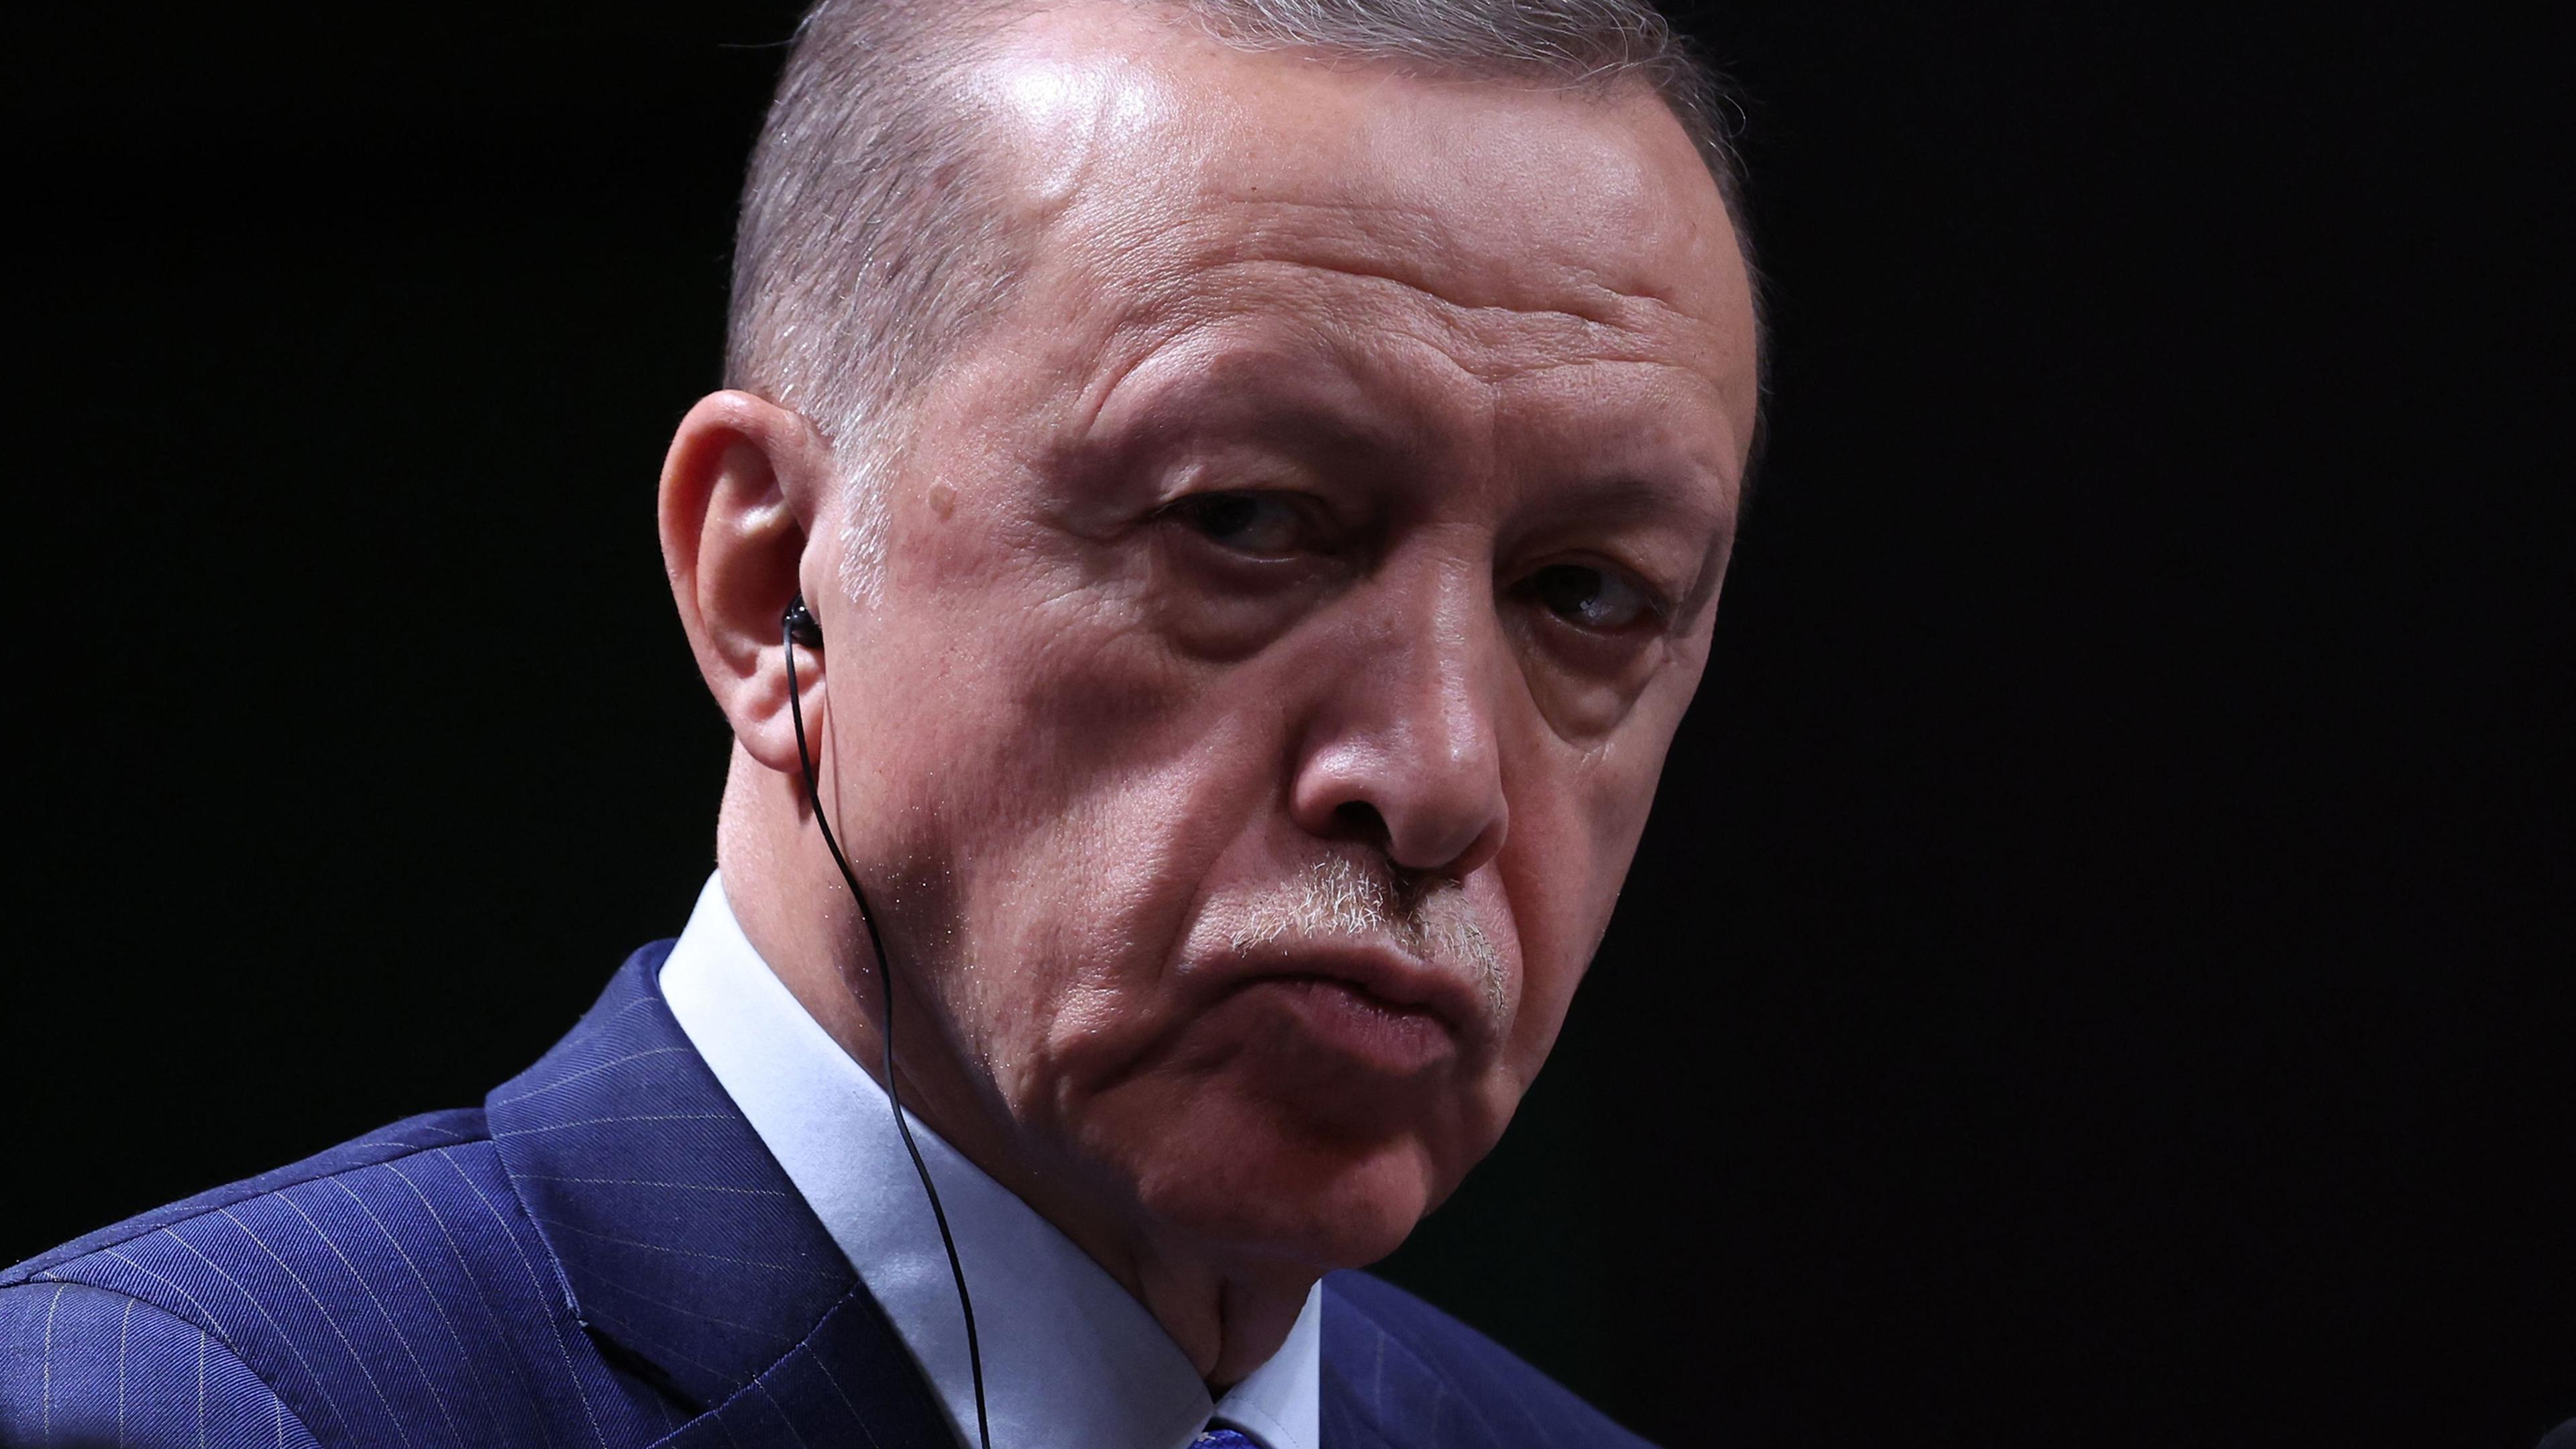 Der türkische Staatschef Recep Tayip Erdogan könnte den Anschlag in Istanbul zum Anlass nehmen, um innen- und außenpolitische Ziele durchzusetzen - auch mit Blick auf die Wahlen im kommenden Jahr.